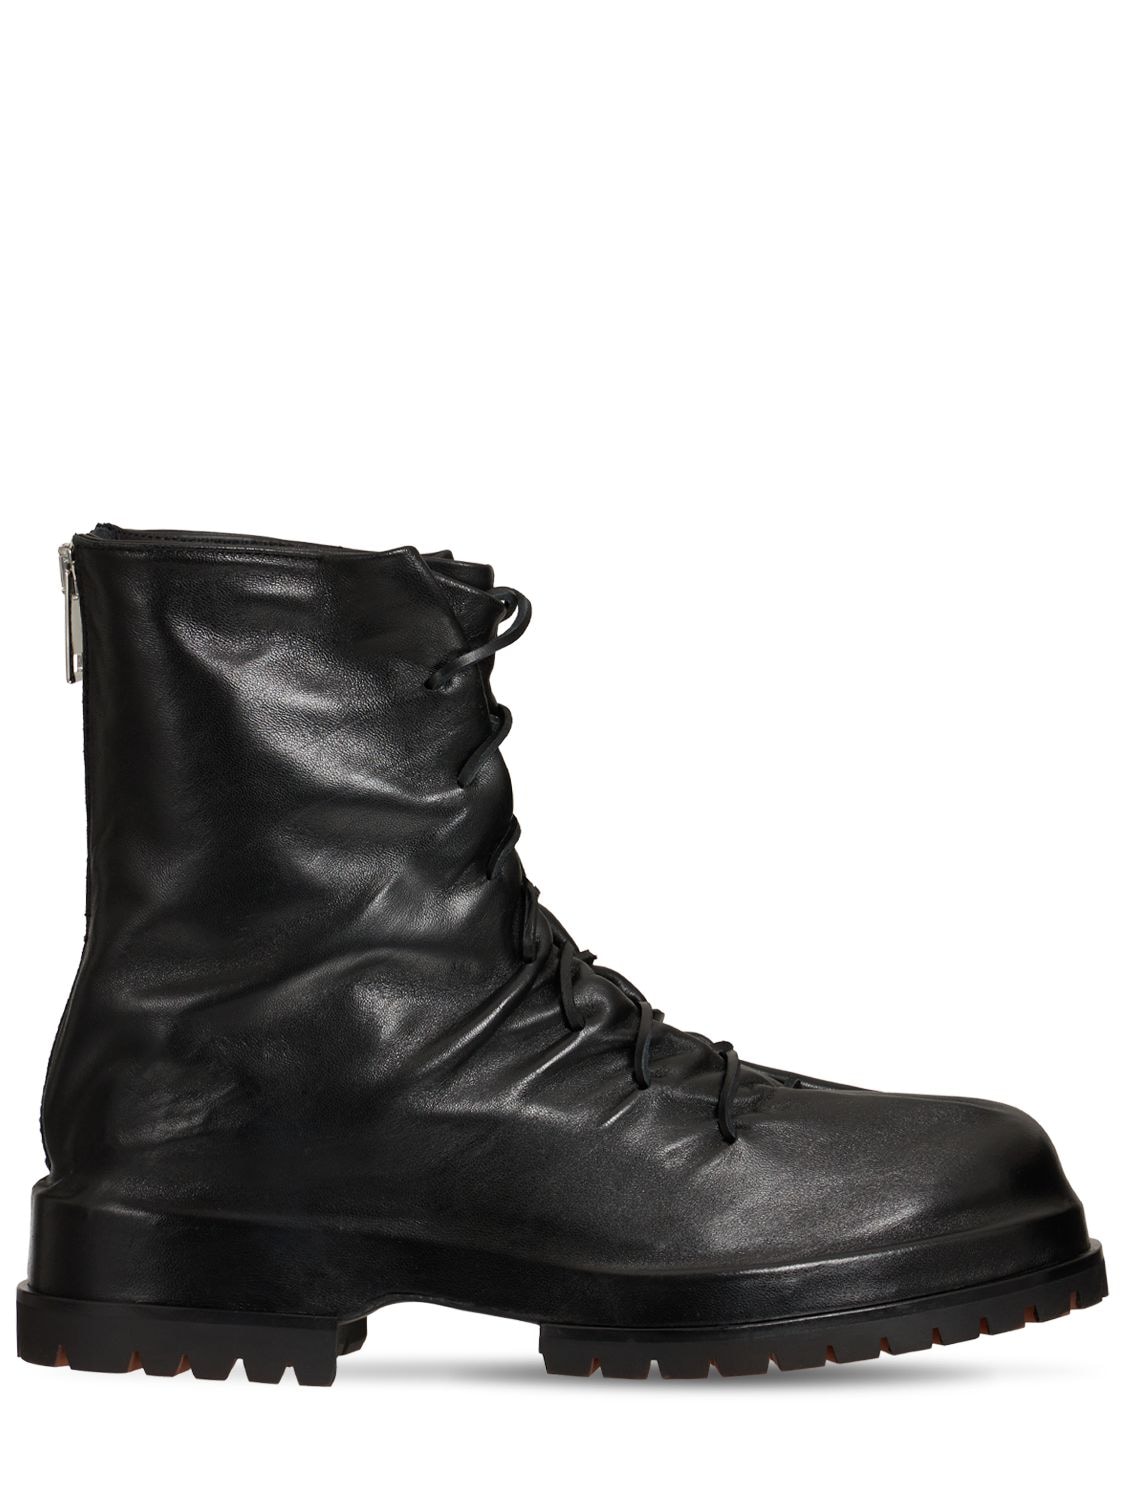 Boots black 424 pour homme Homme Chaussures Bottes Bottes casual 